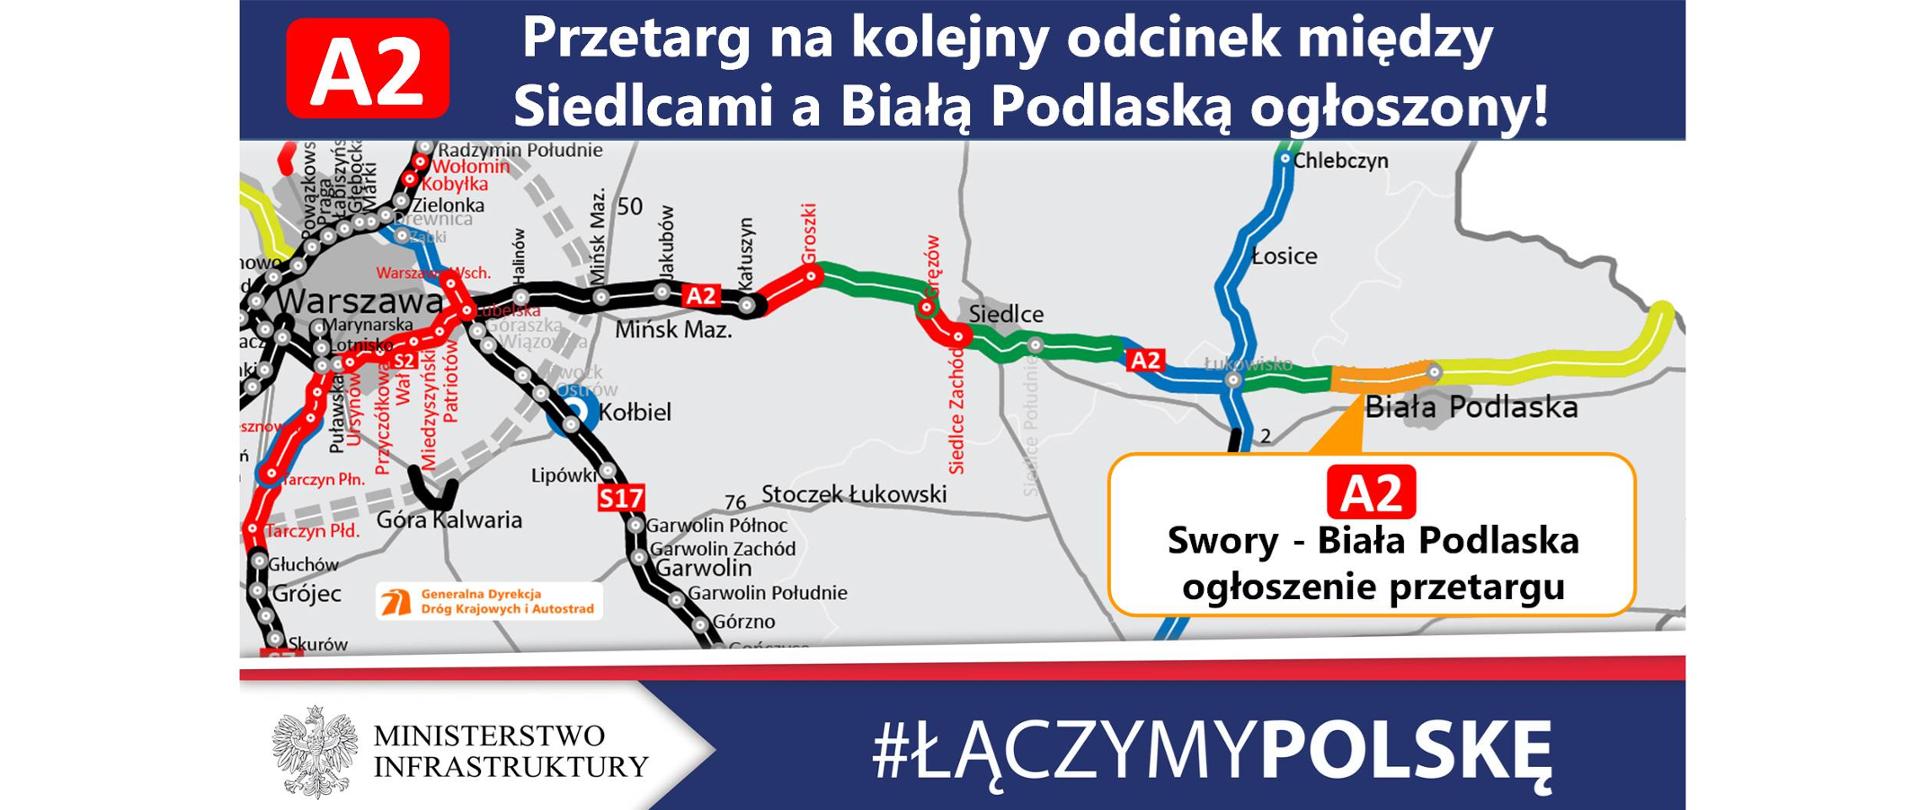 Przetarg na realizację A2 Swory - Biała Podlaska - infografika